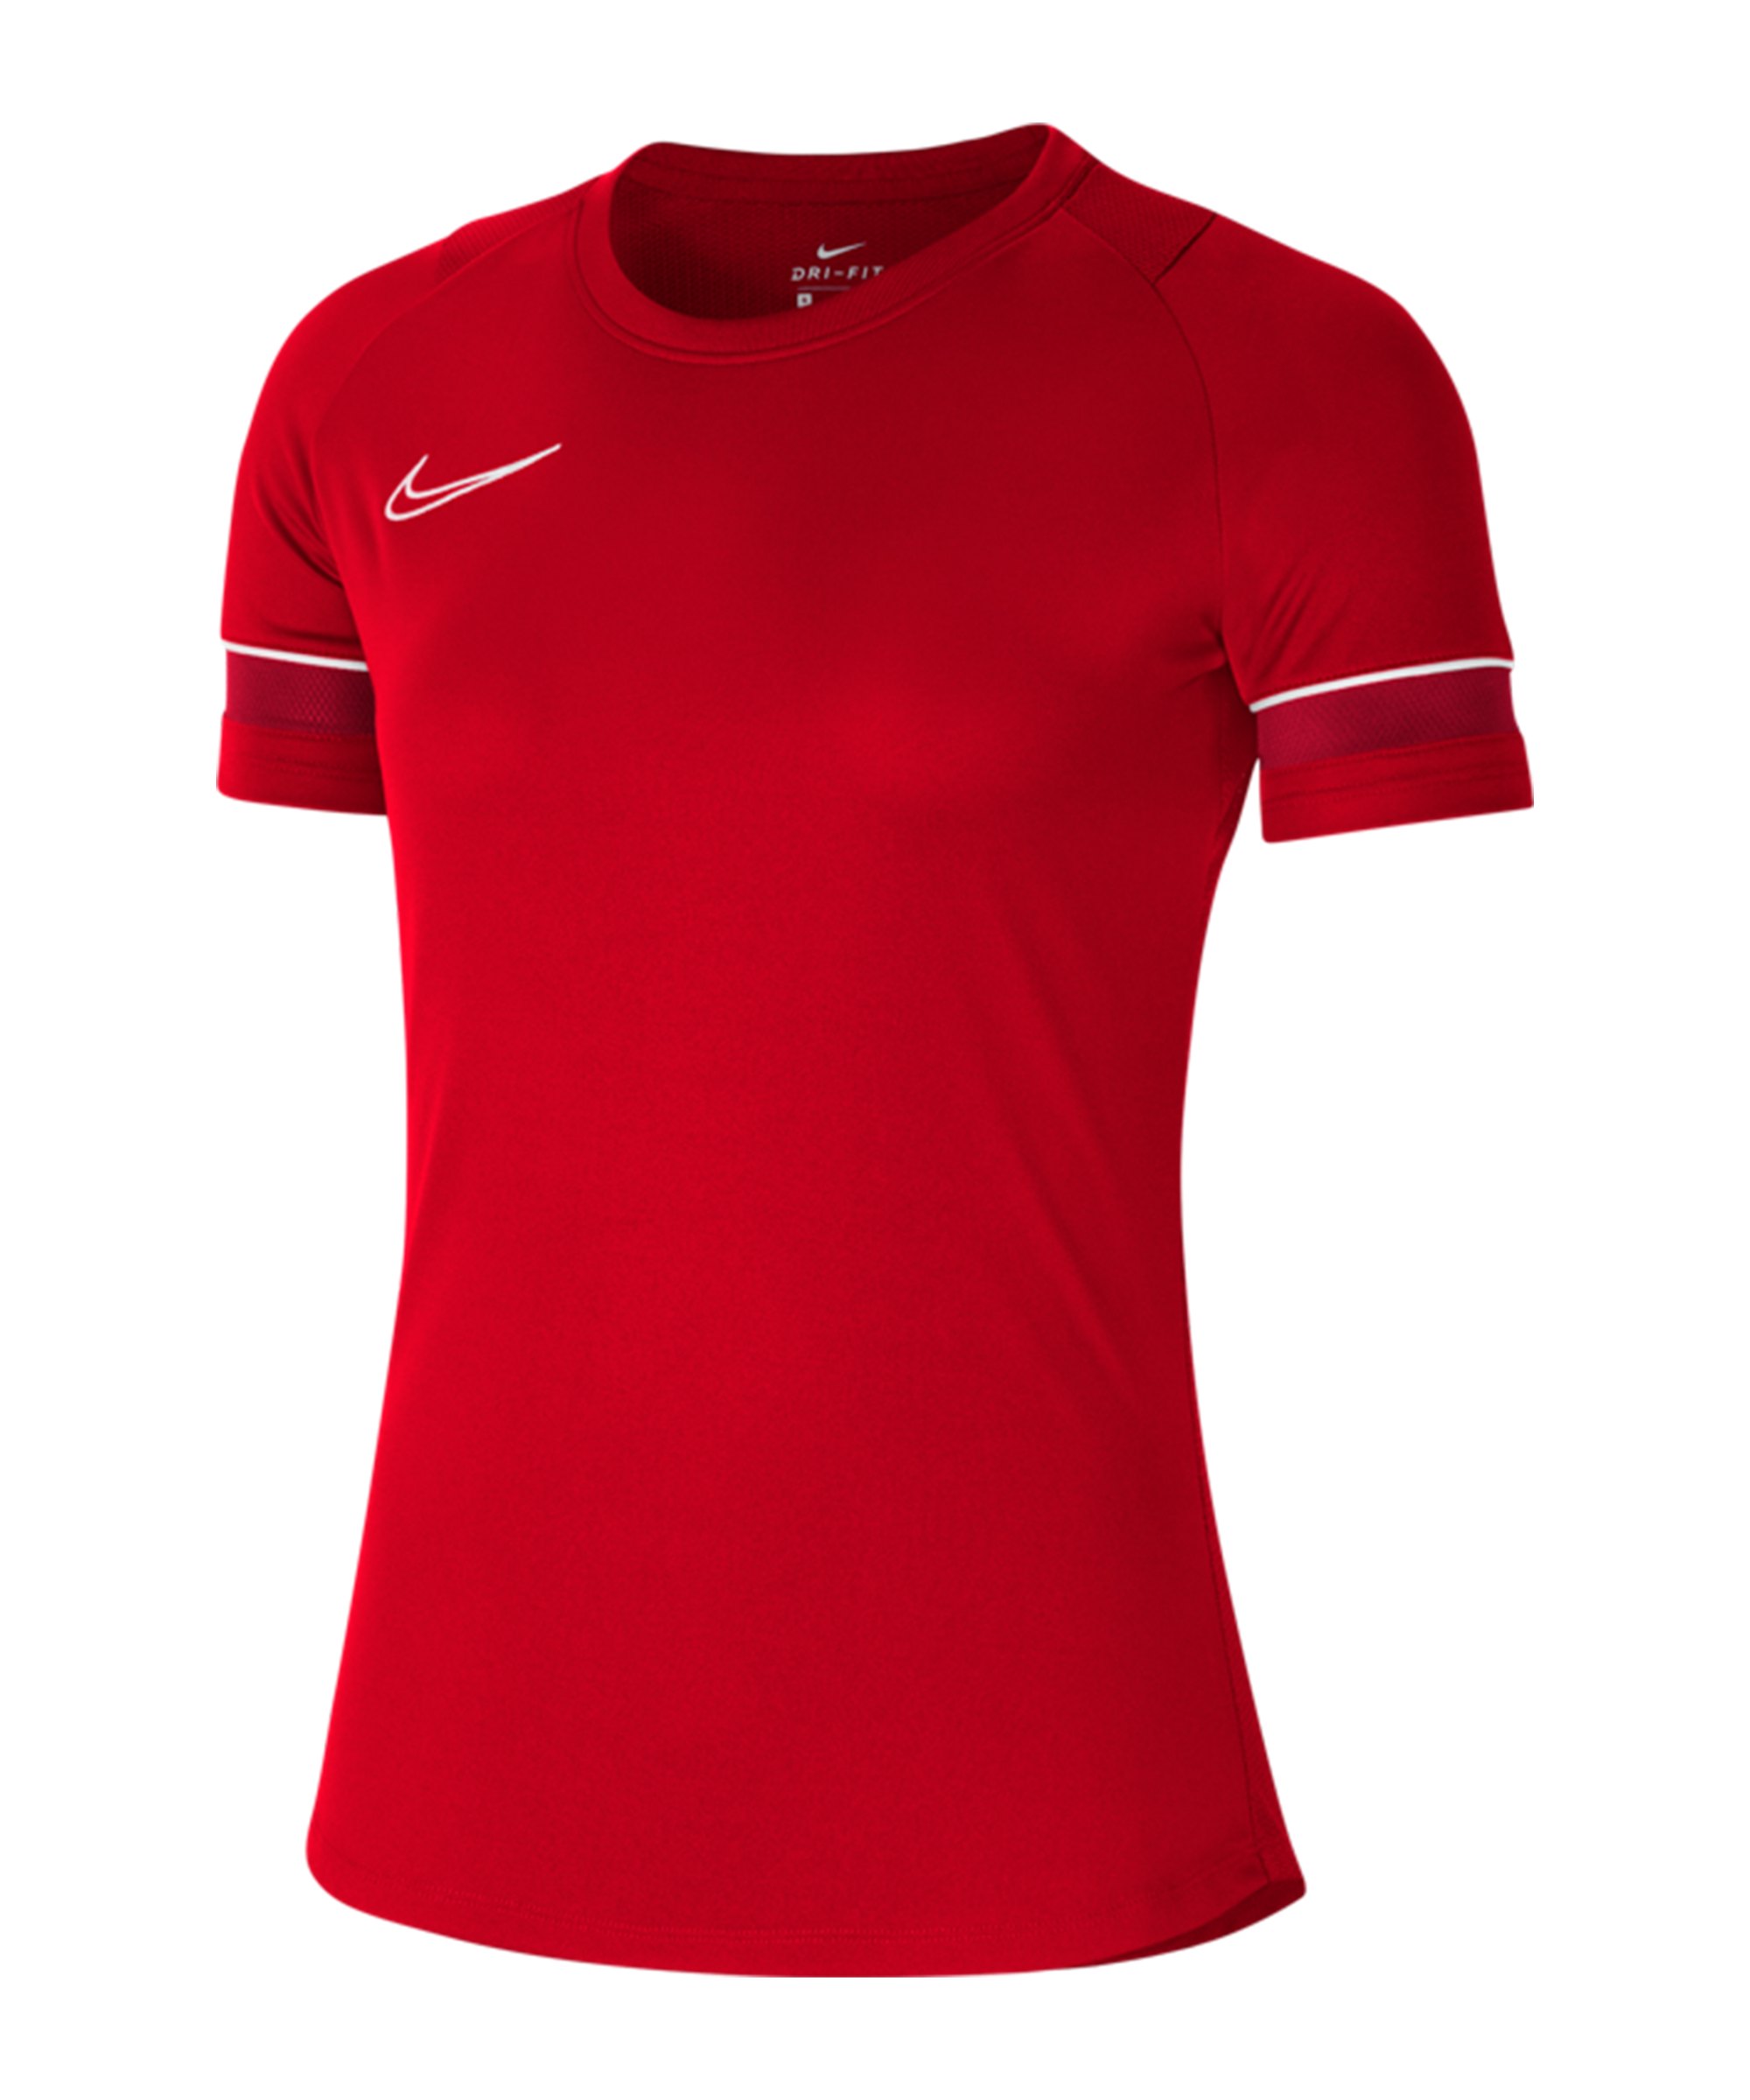 Nike Academy 21 T-Shirt Damen Rot Weiss F657 - rot